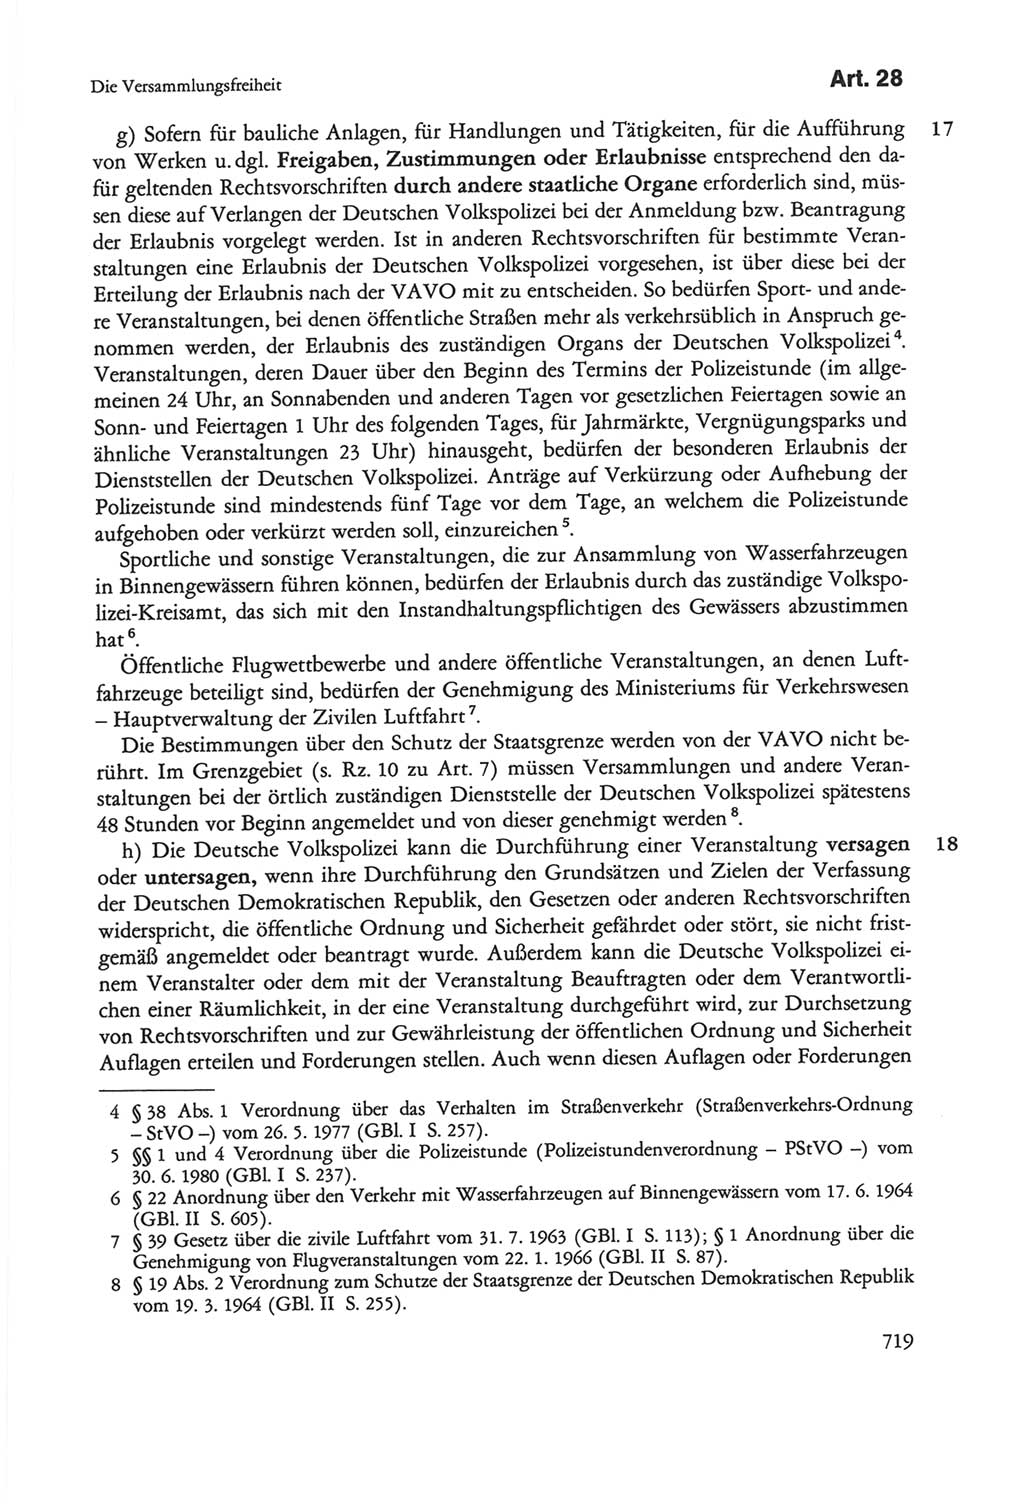 Die sozialistische Verfassung der Deutschen Demokratischen Republik (DDR), Kommentar mit einem Nachtrag 1997, Seite 719 (Soz. Verf. DDR Komm. Nachtr. 1997, S. 719)